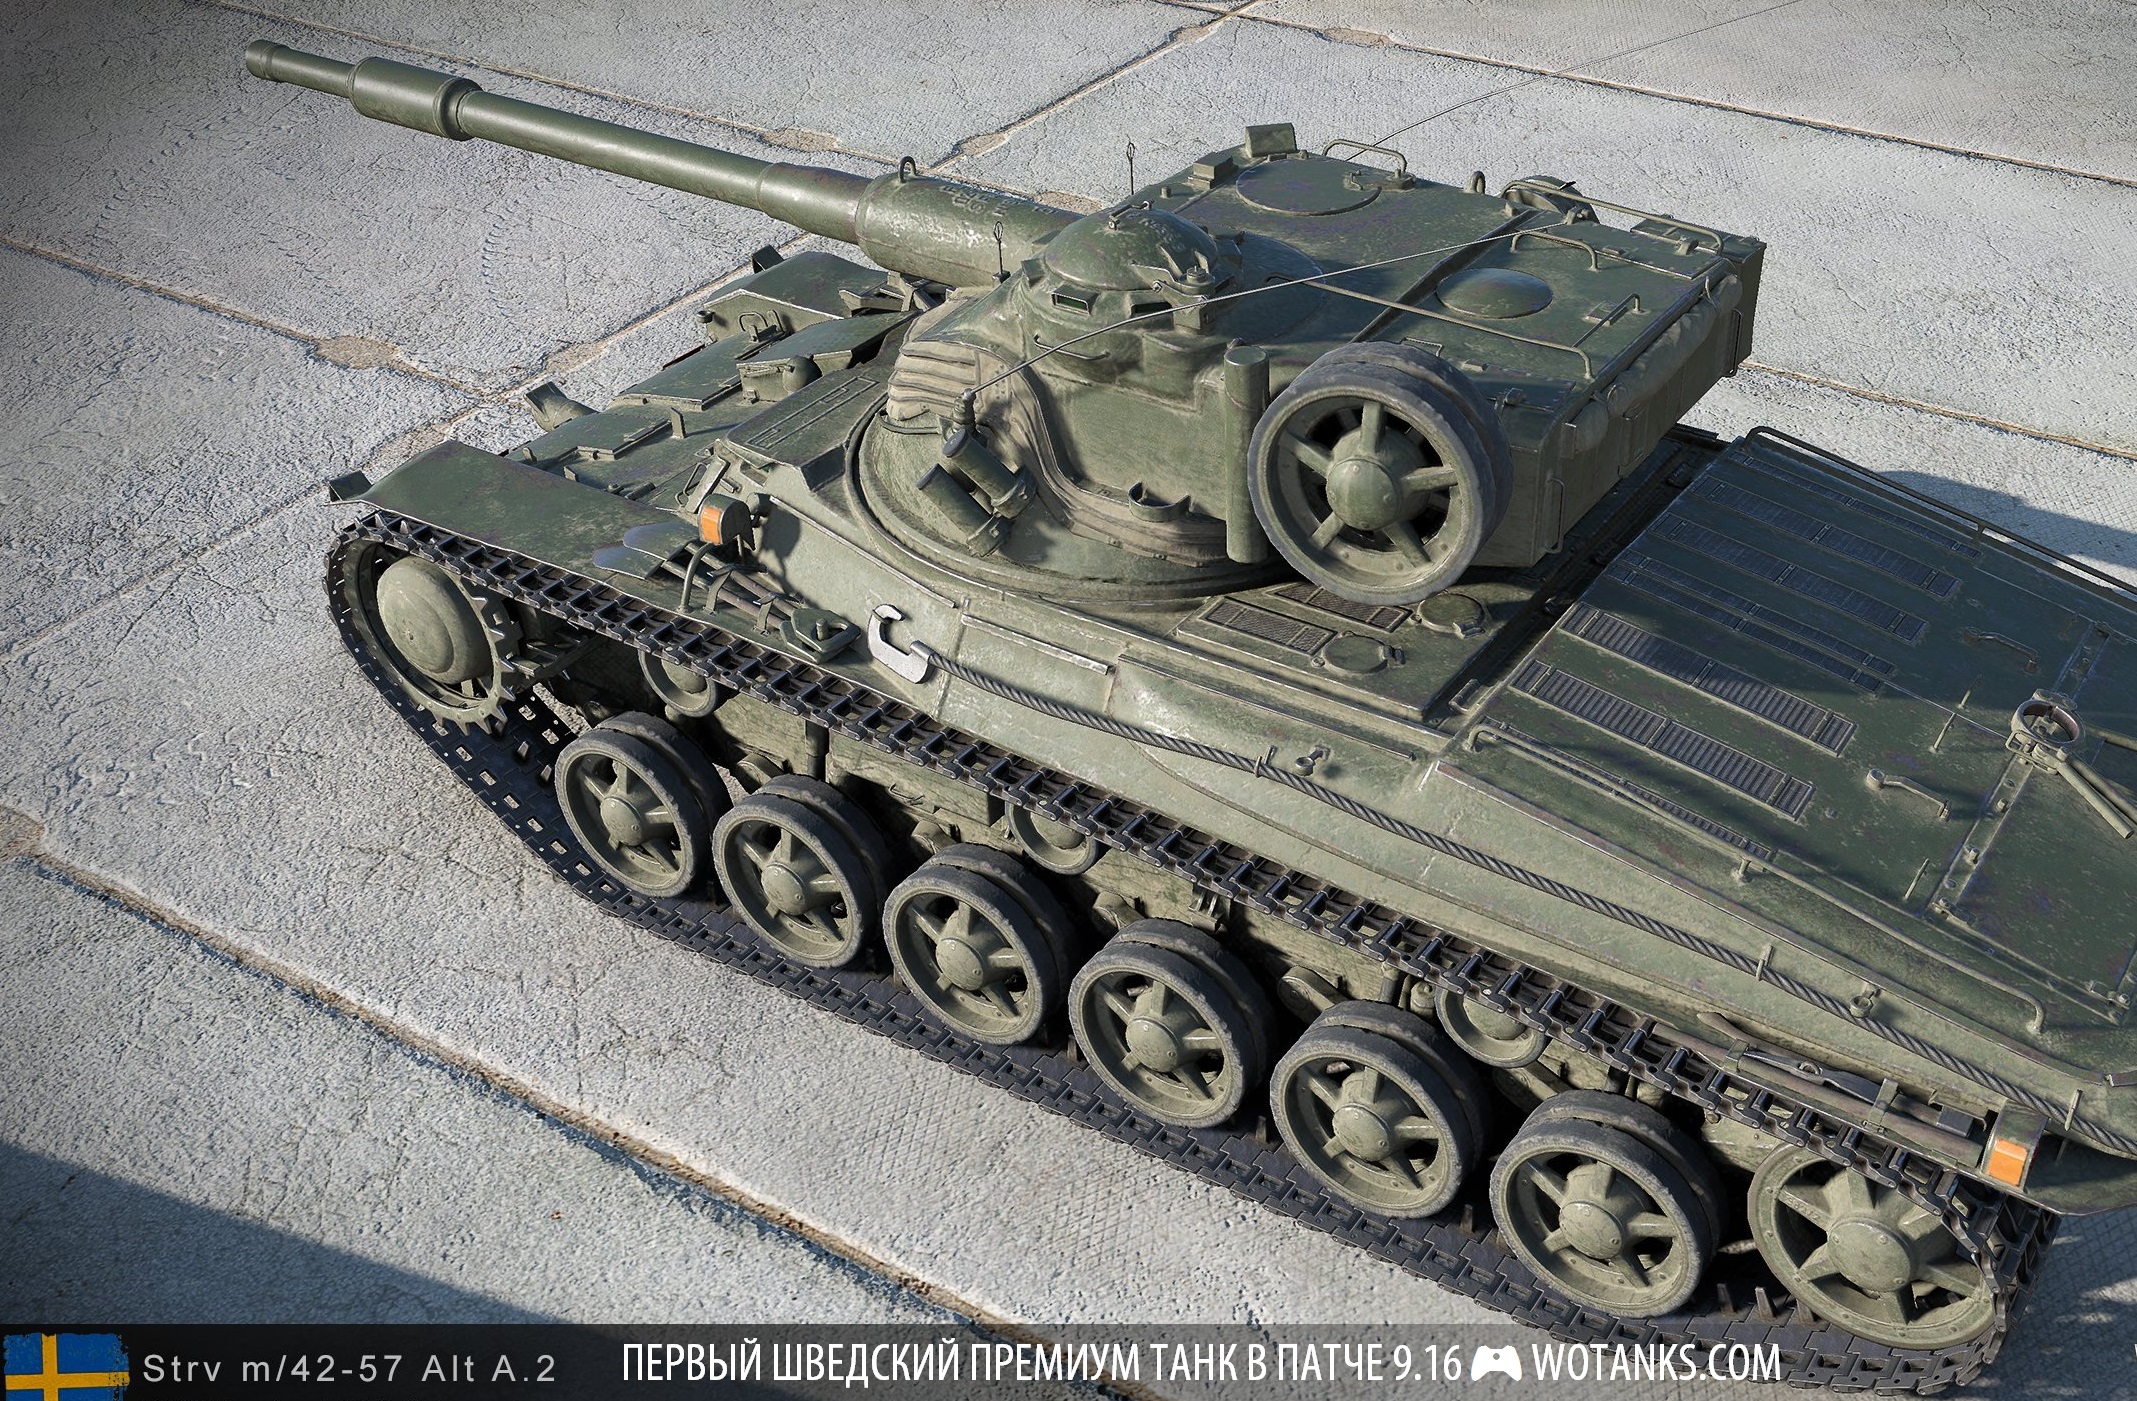 Шведский премиум танк WOT 9.16 VI уровня Strv m/42-57 Alt A.2